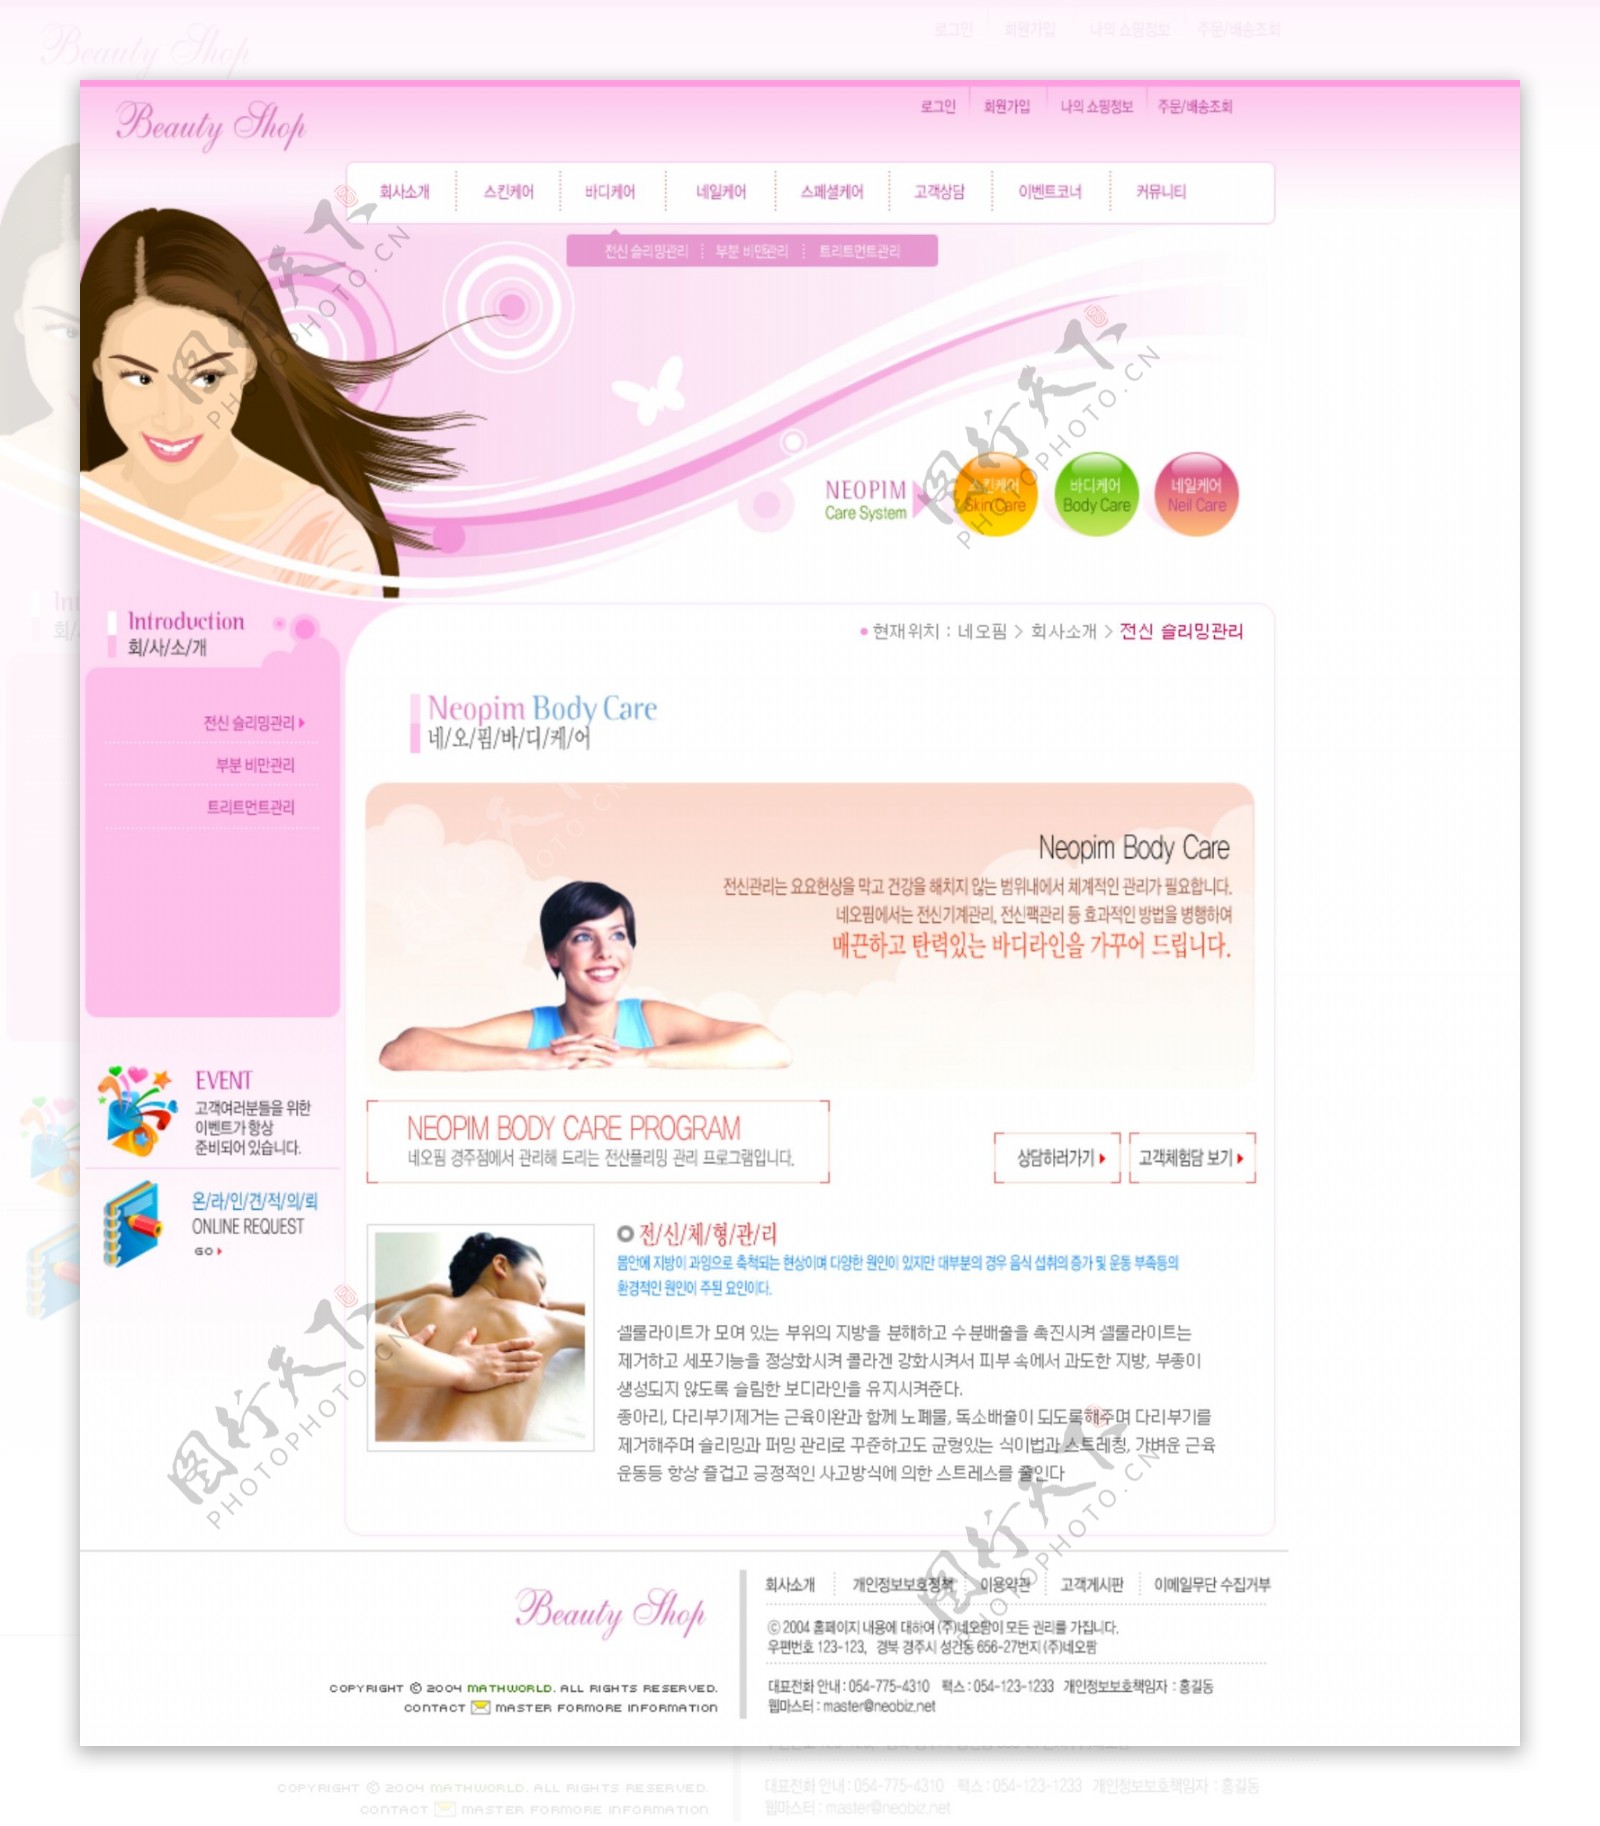 女性美容化妆品产品销售公司韩国网页模板图片